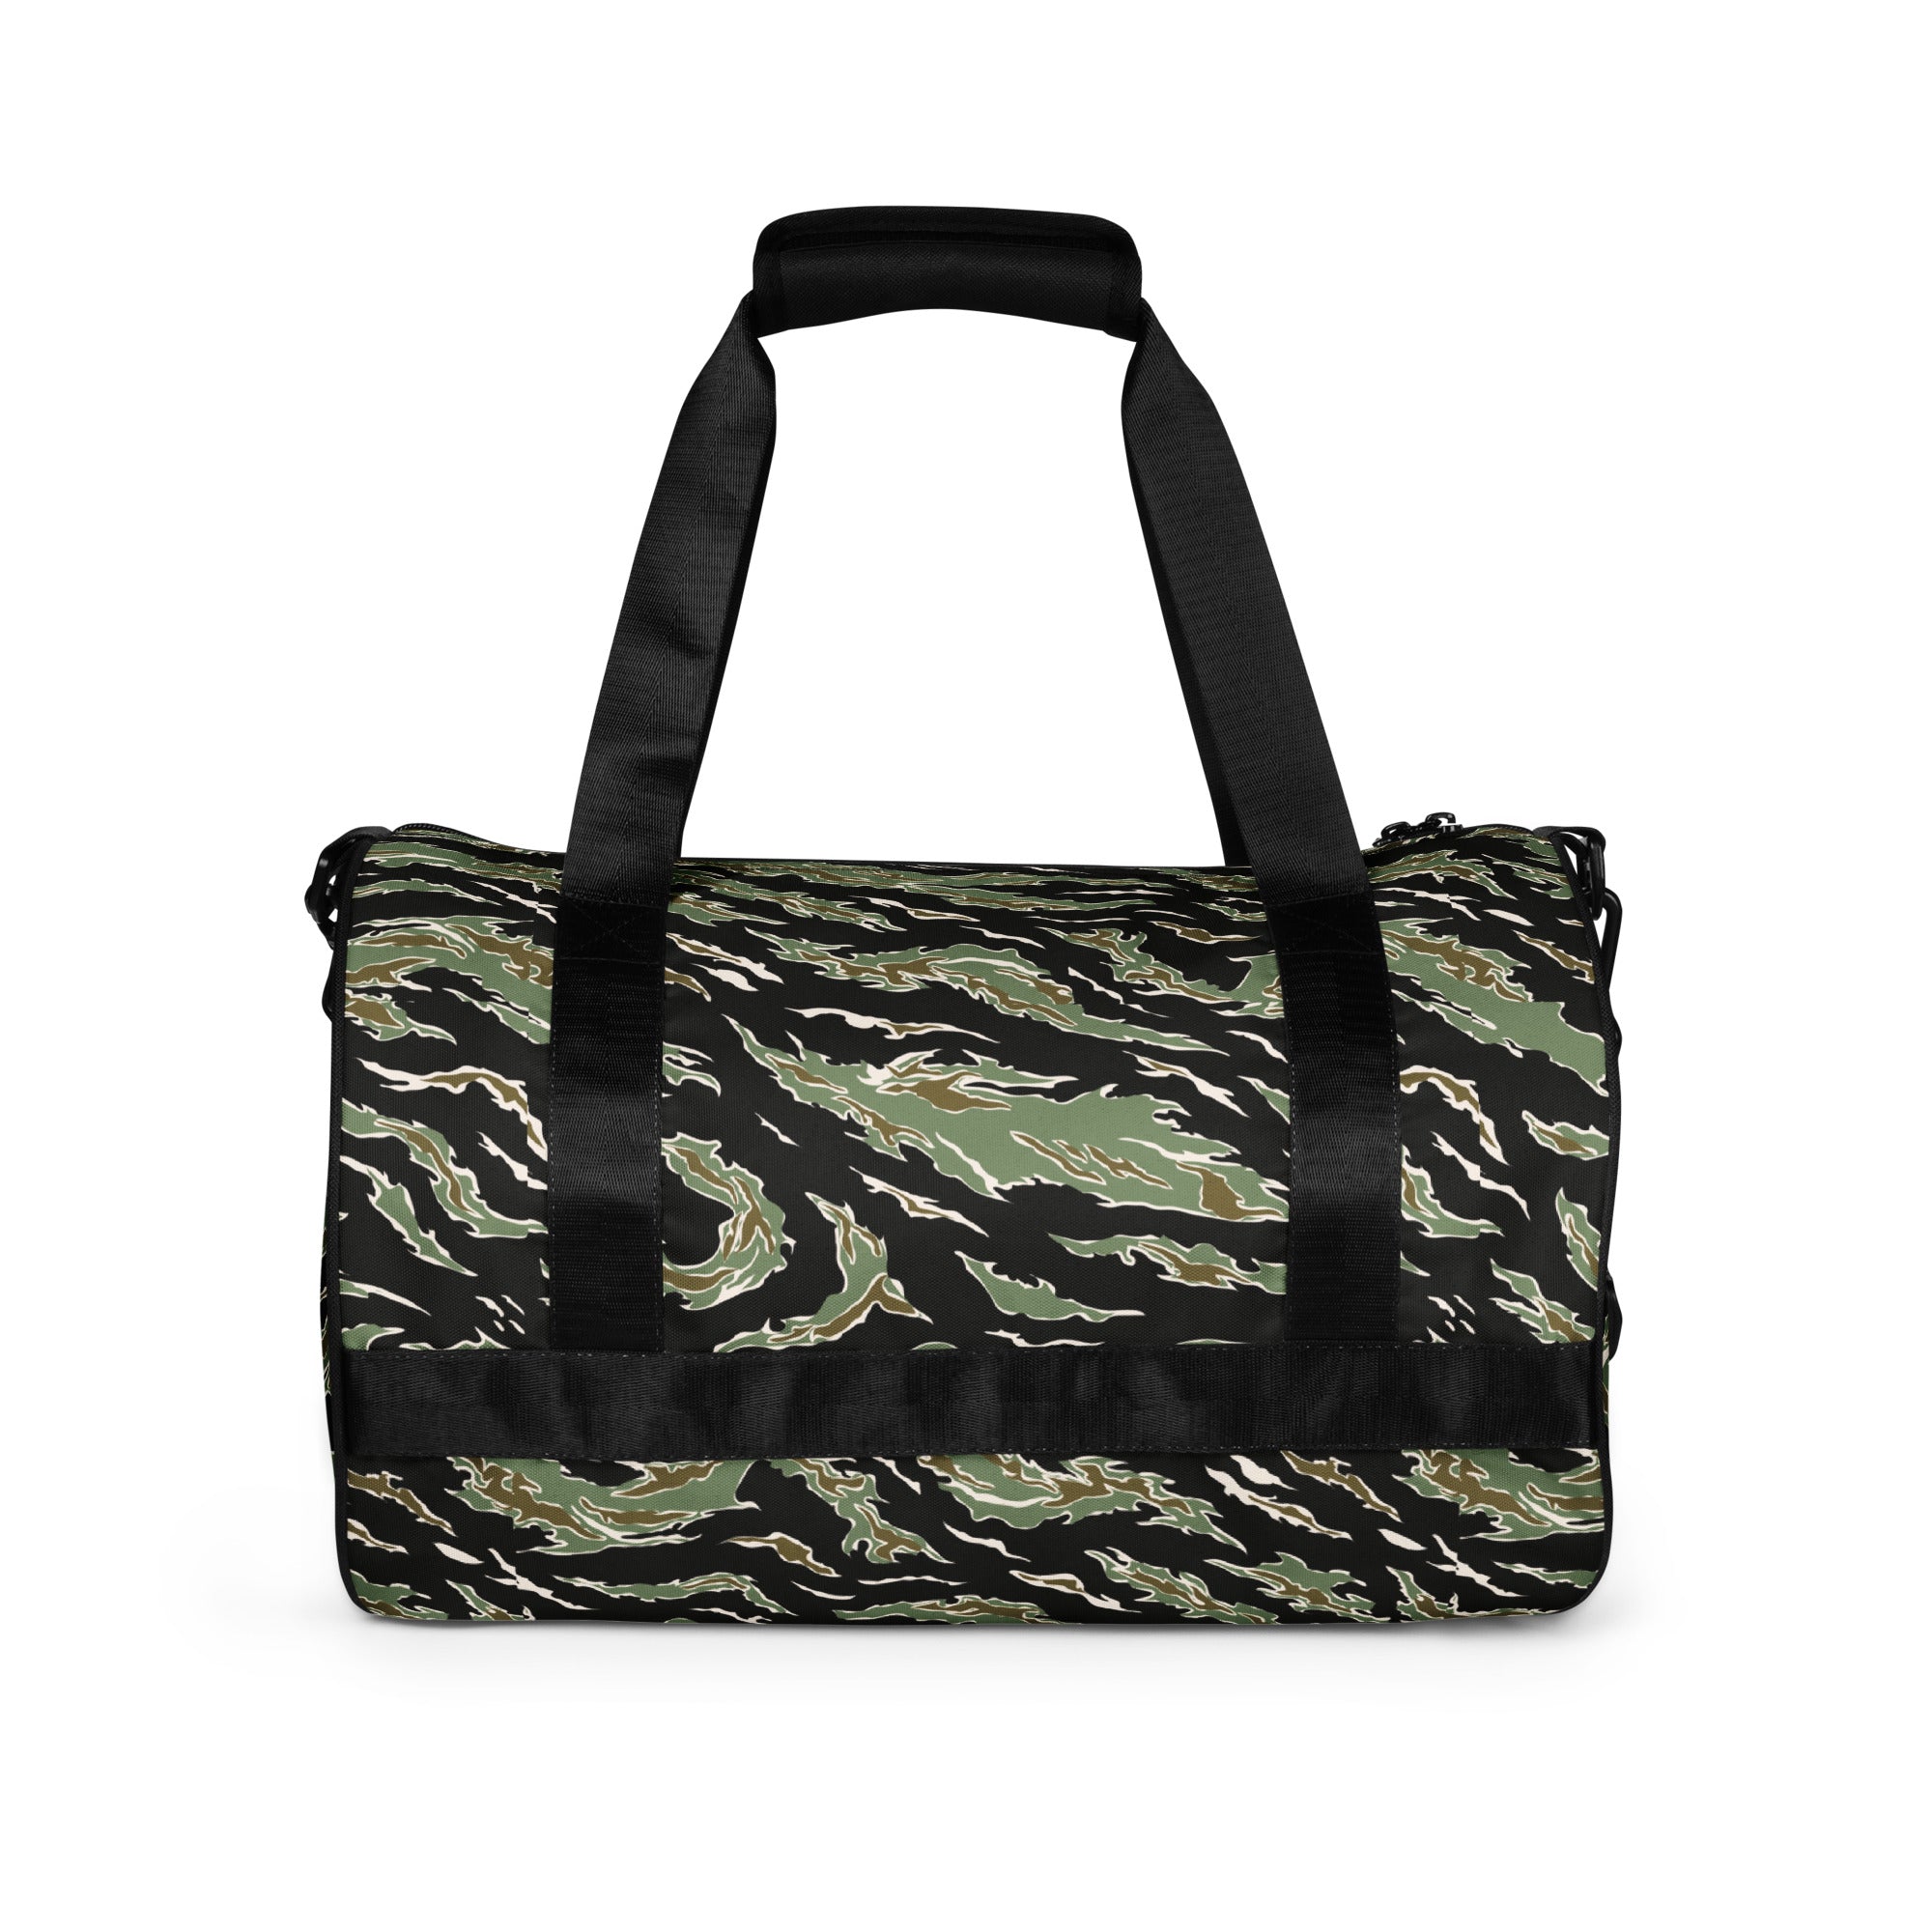 Tiger Stripe Jungle Camouflage Gym Bag